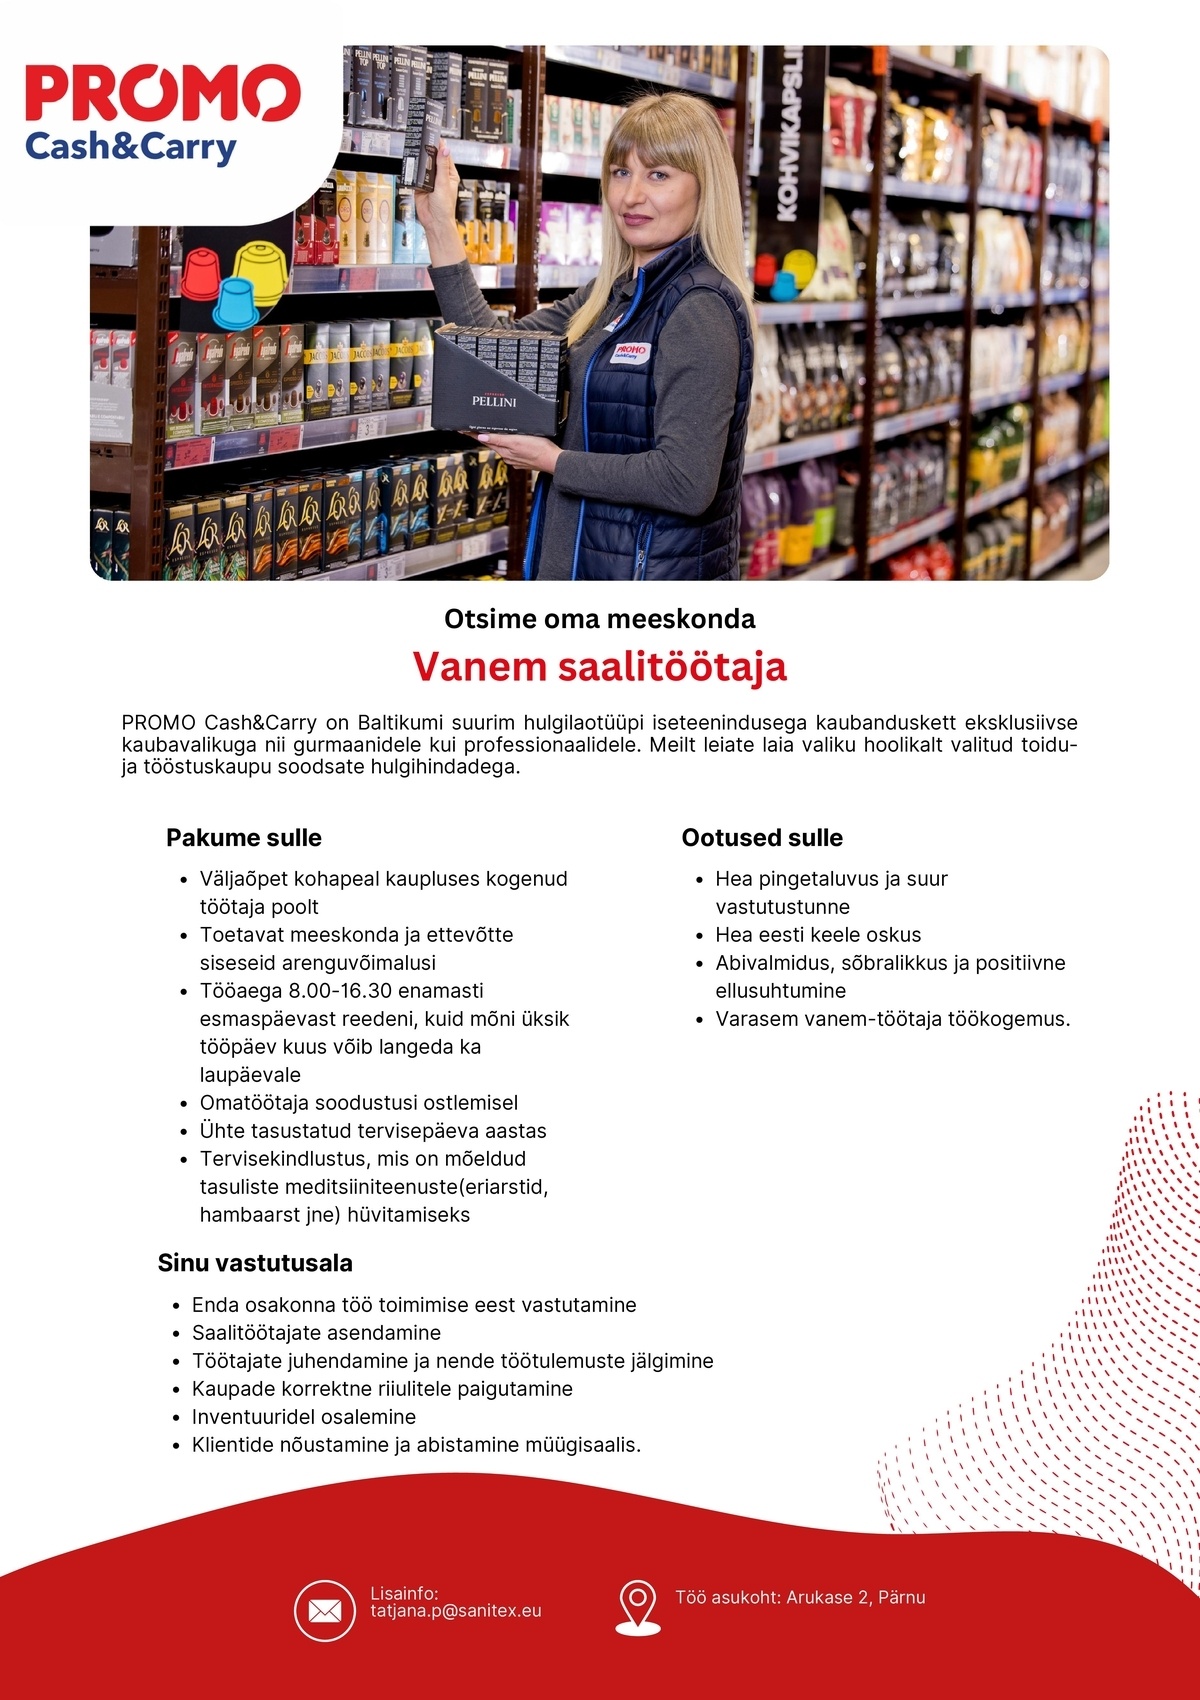 Sanitex OÜ Vanem saalitöötaja Pärnu Promo Cash&Carry hulgikaupluses